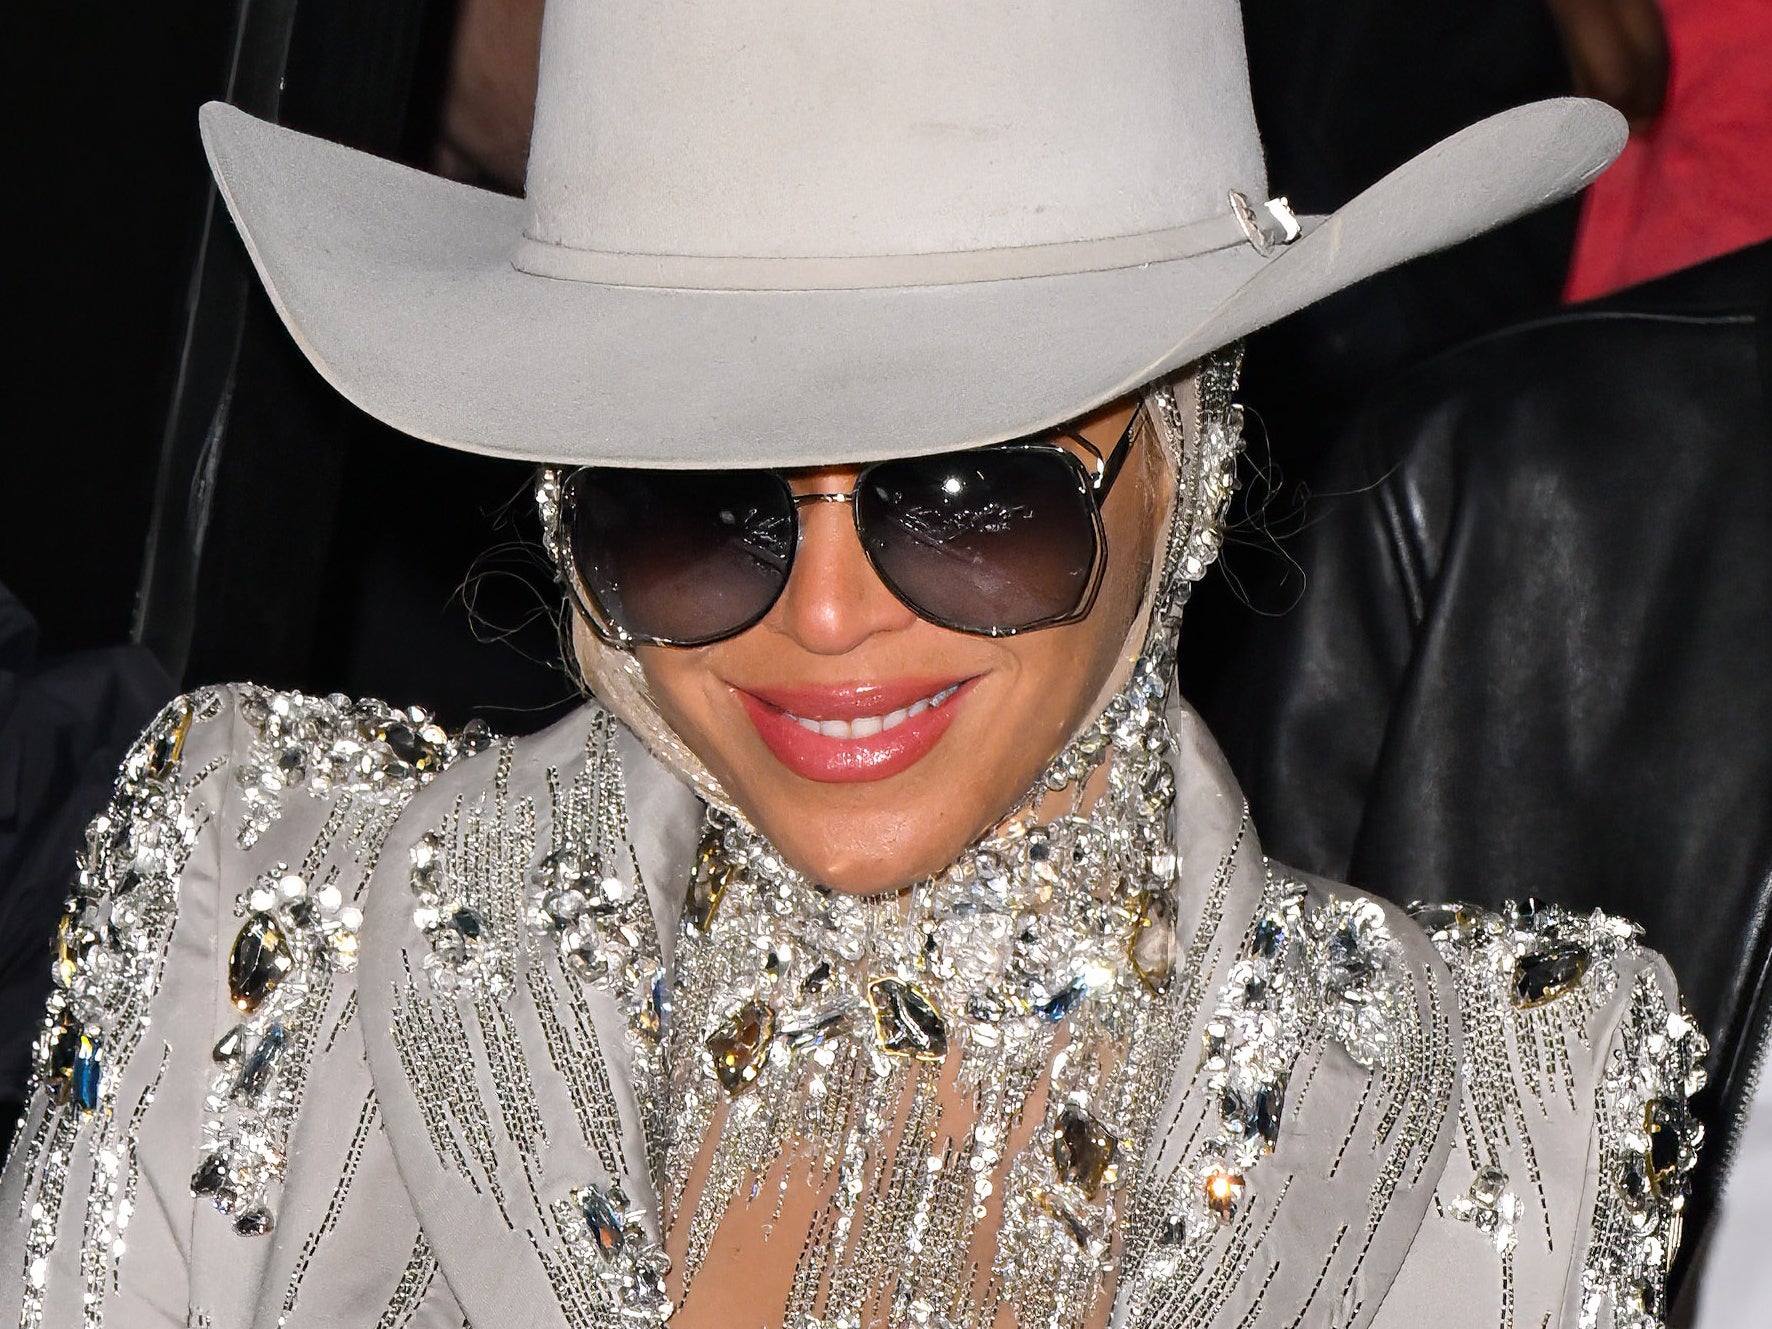 Beyoncé Reveals New Country Album Name, 'Cowboy Carter'